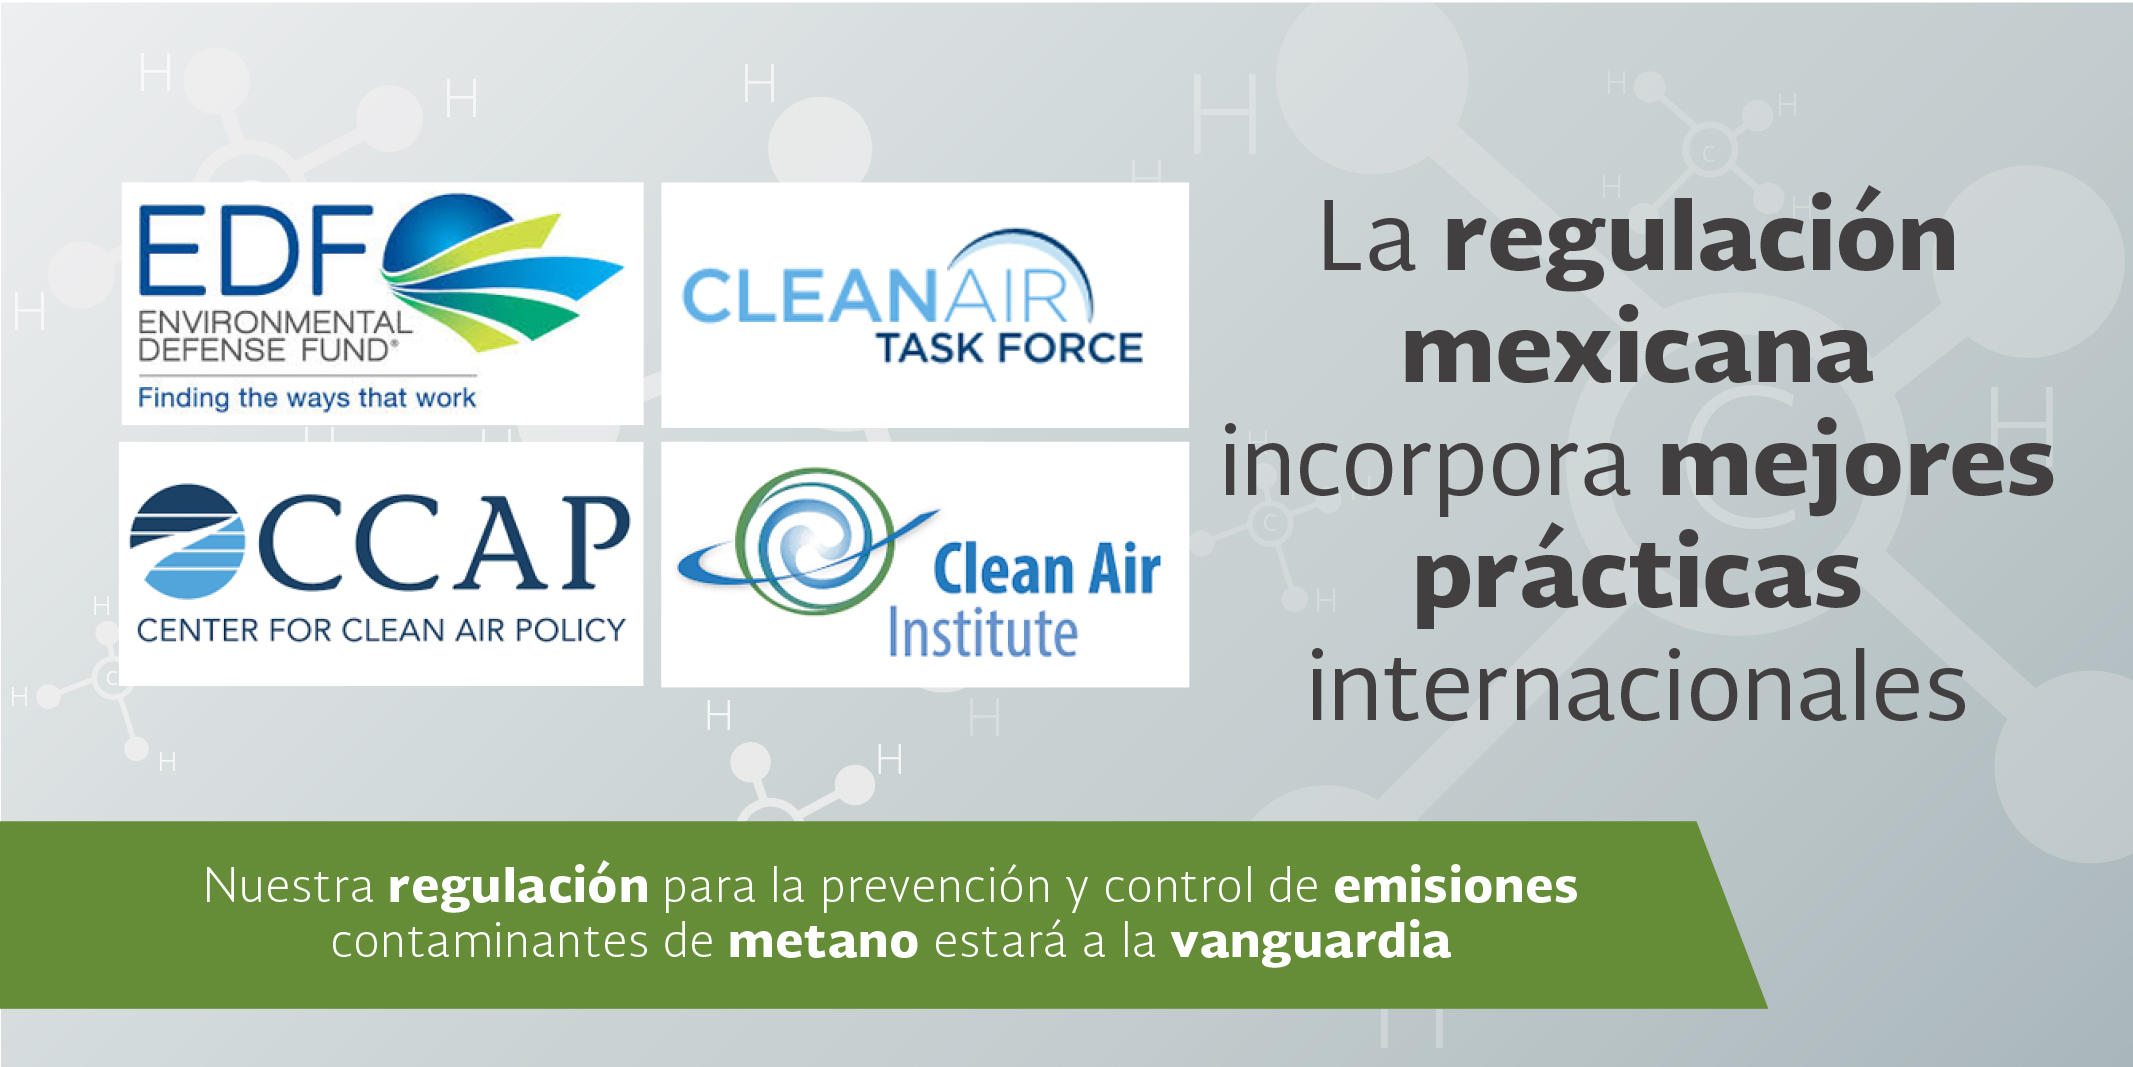 La regulación mexicana incorpora mejores prácticas internacionales